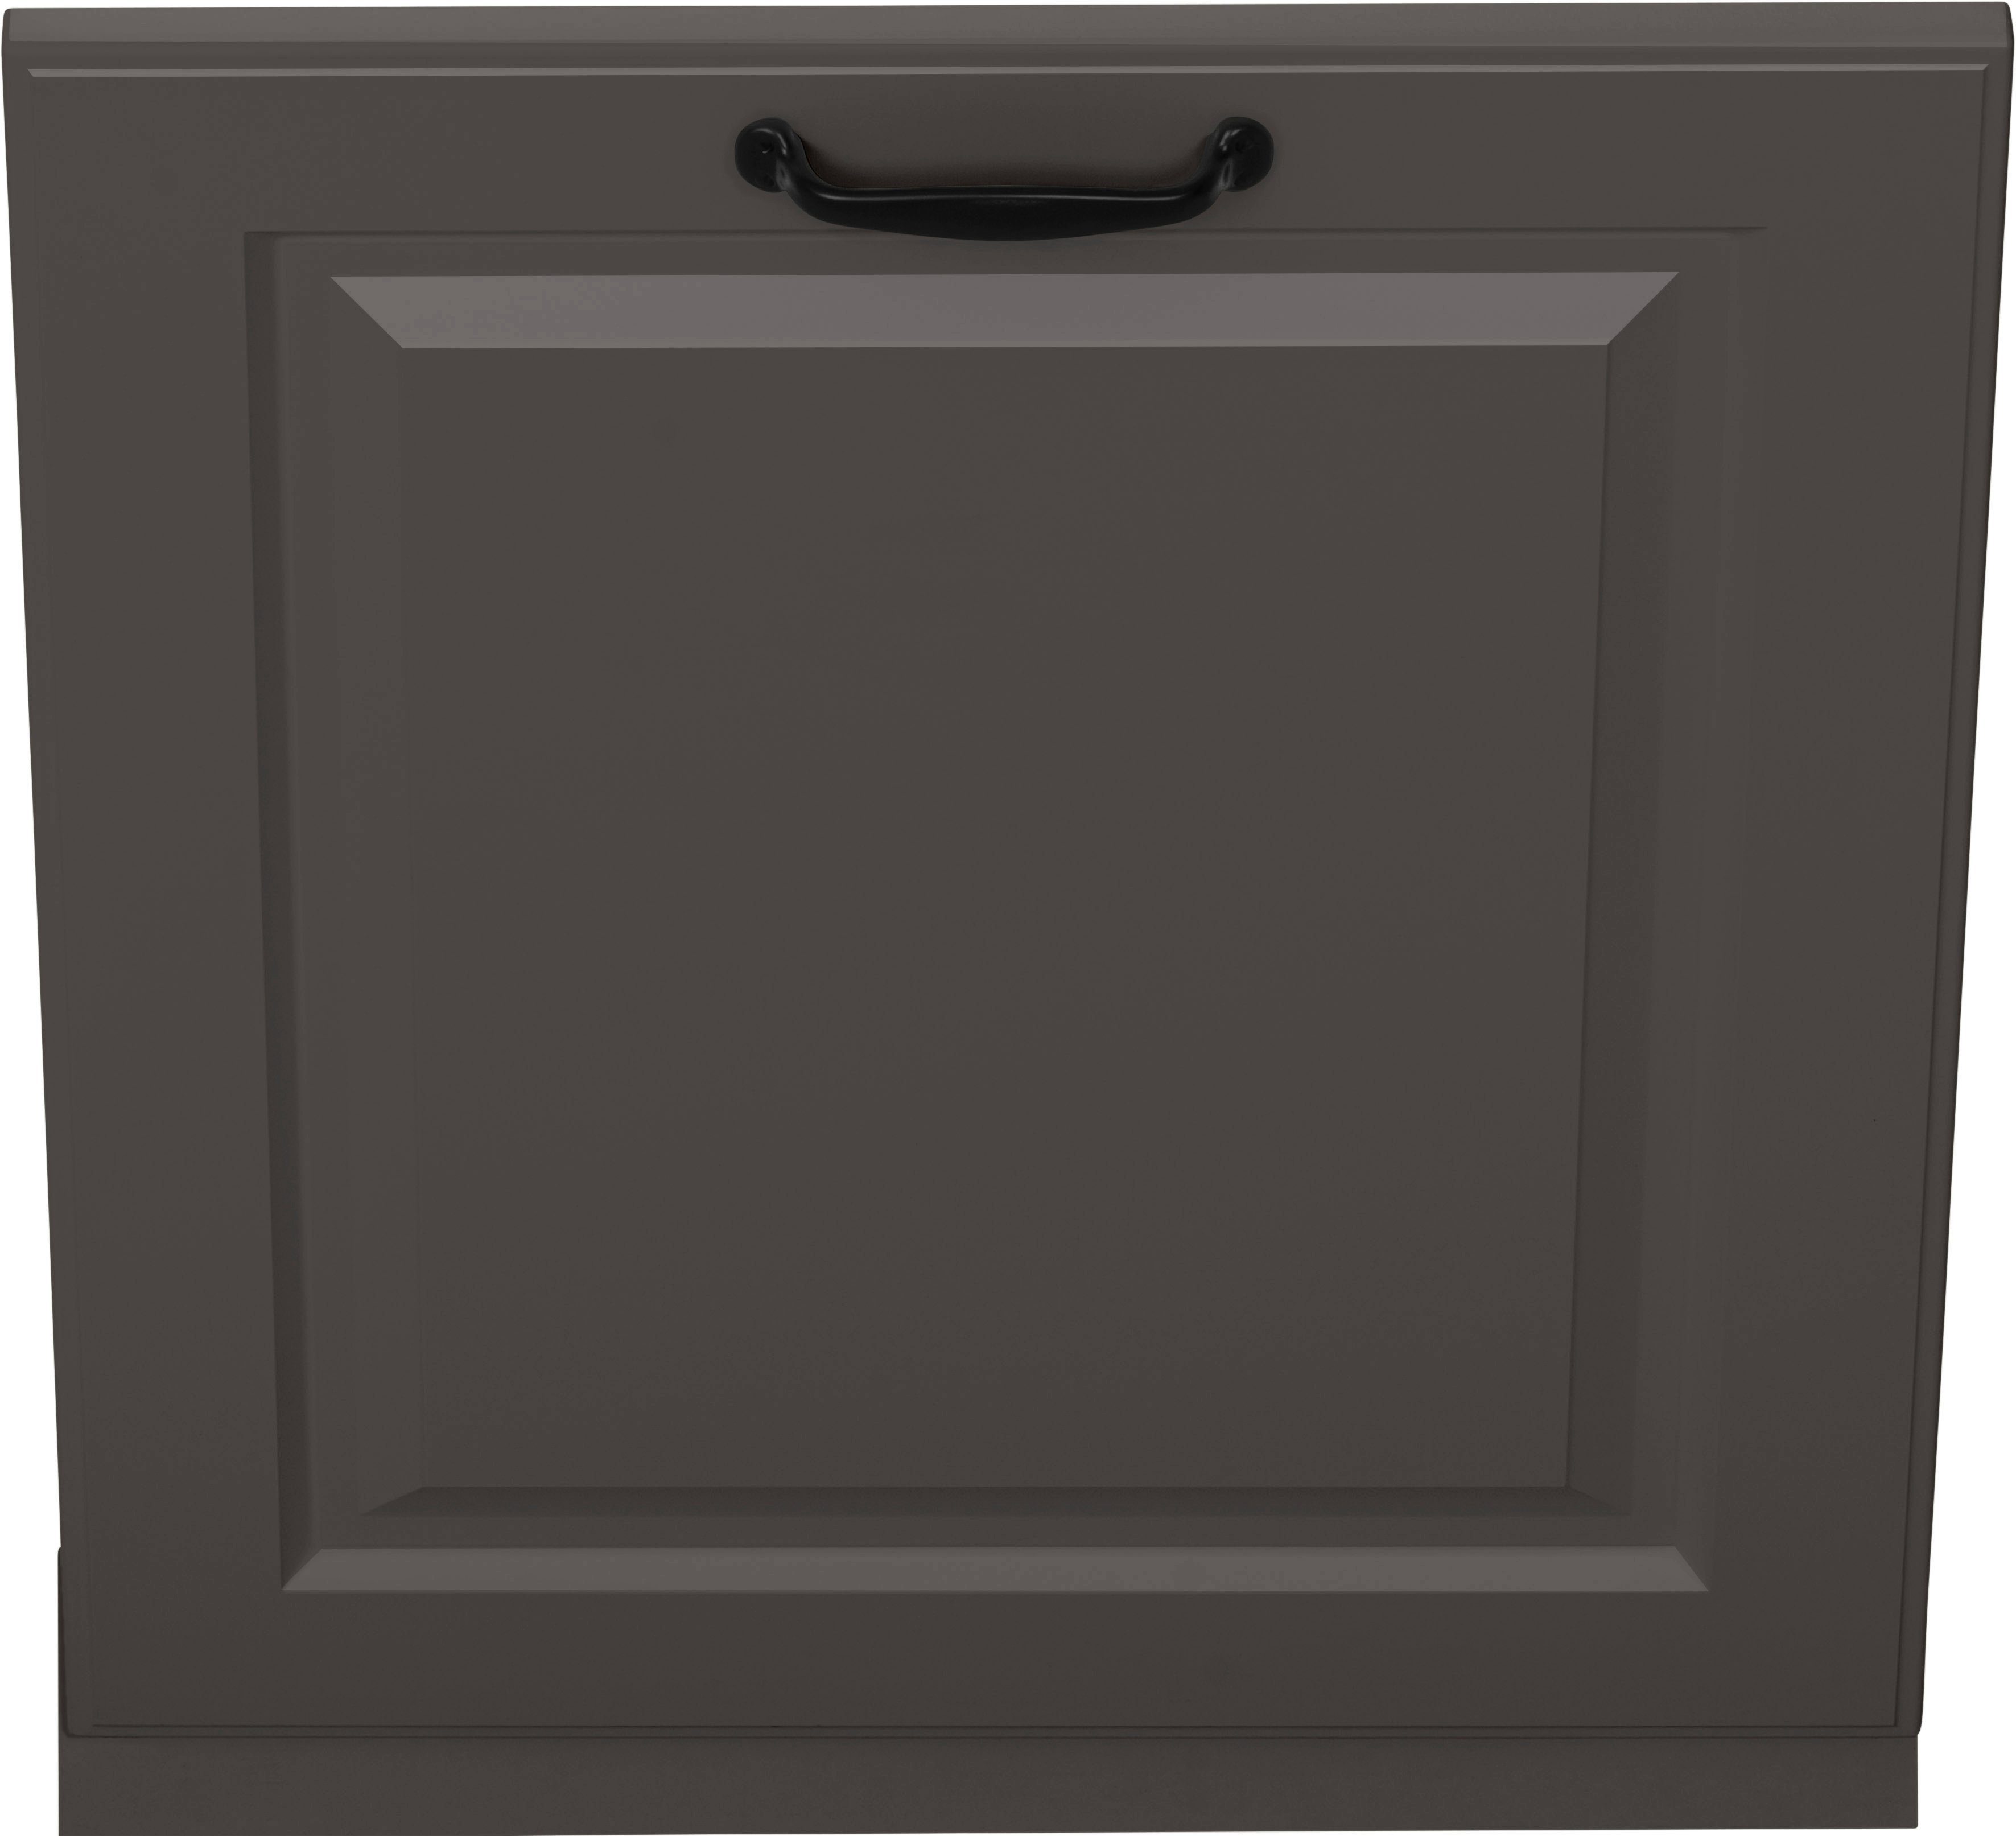 wiho Küchen Möbelblende für Anthrazit/Anthrazit vollintegrierbaren Erla, Geschirrspüler breit, 60 cm